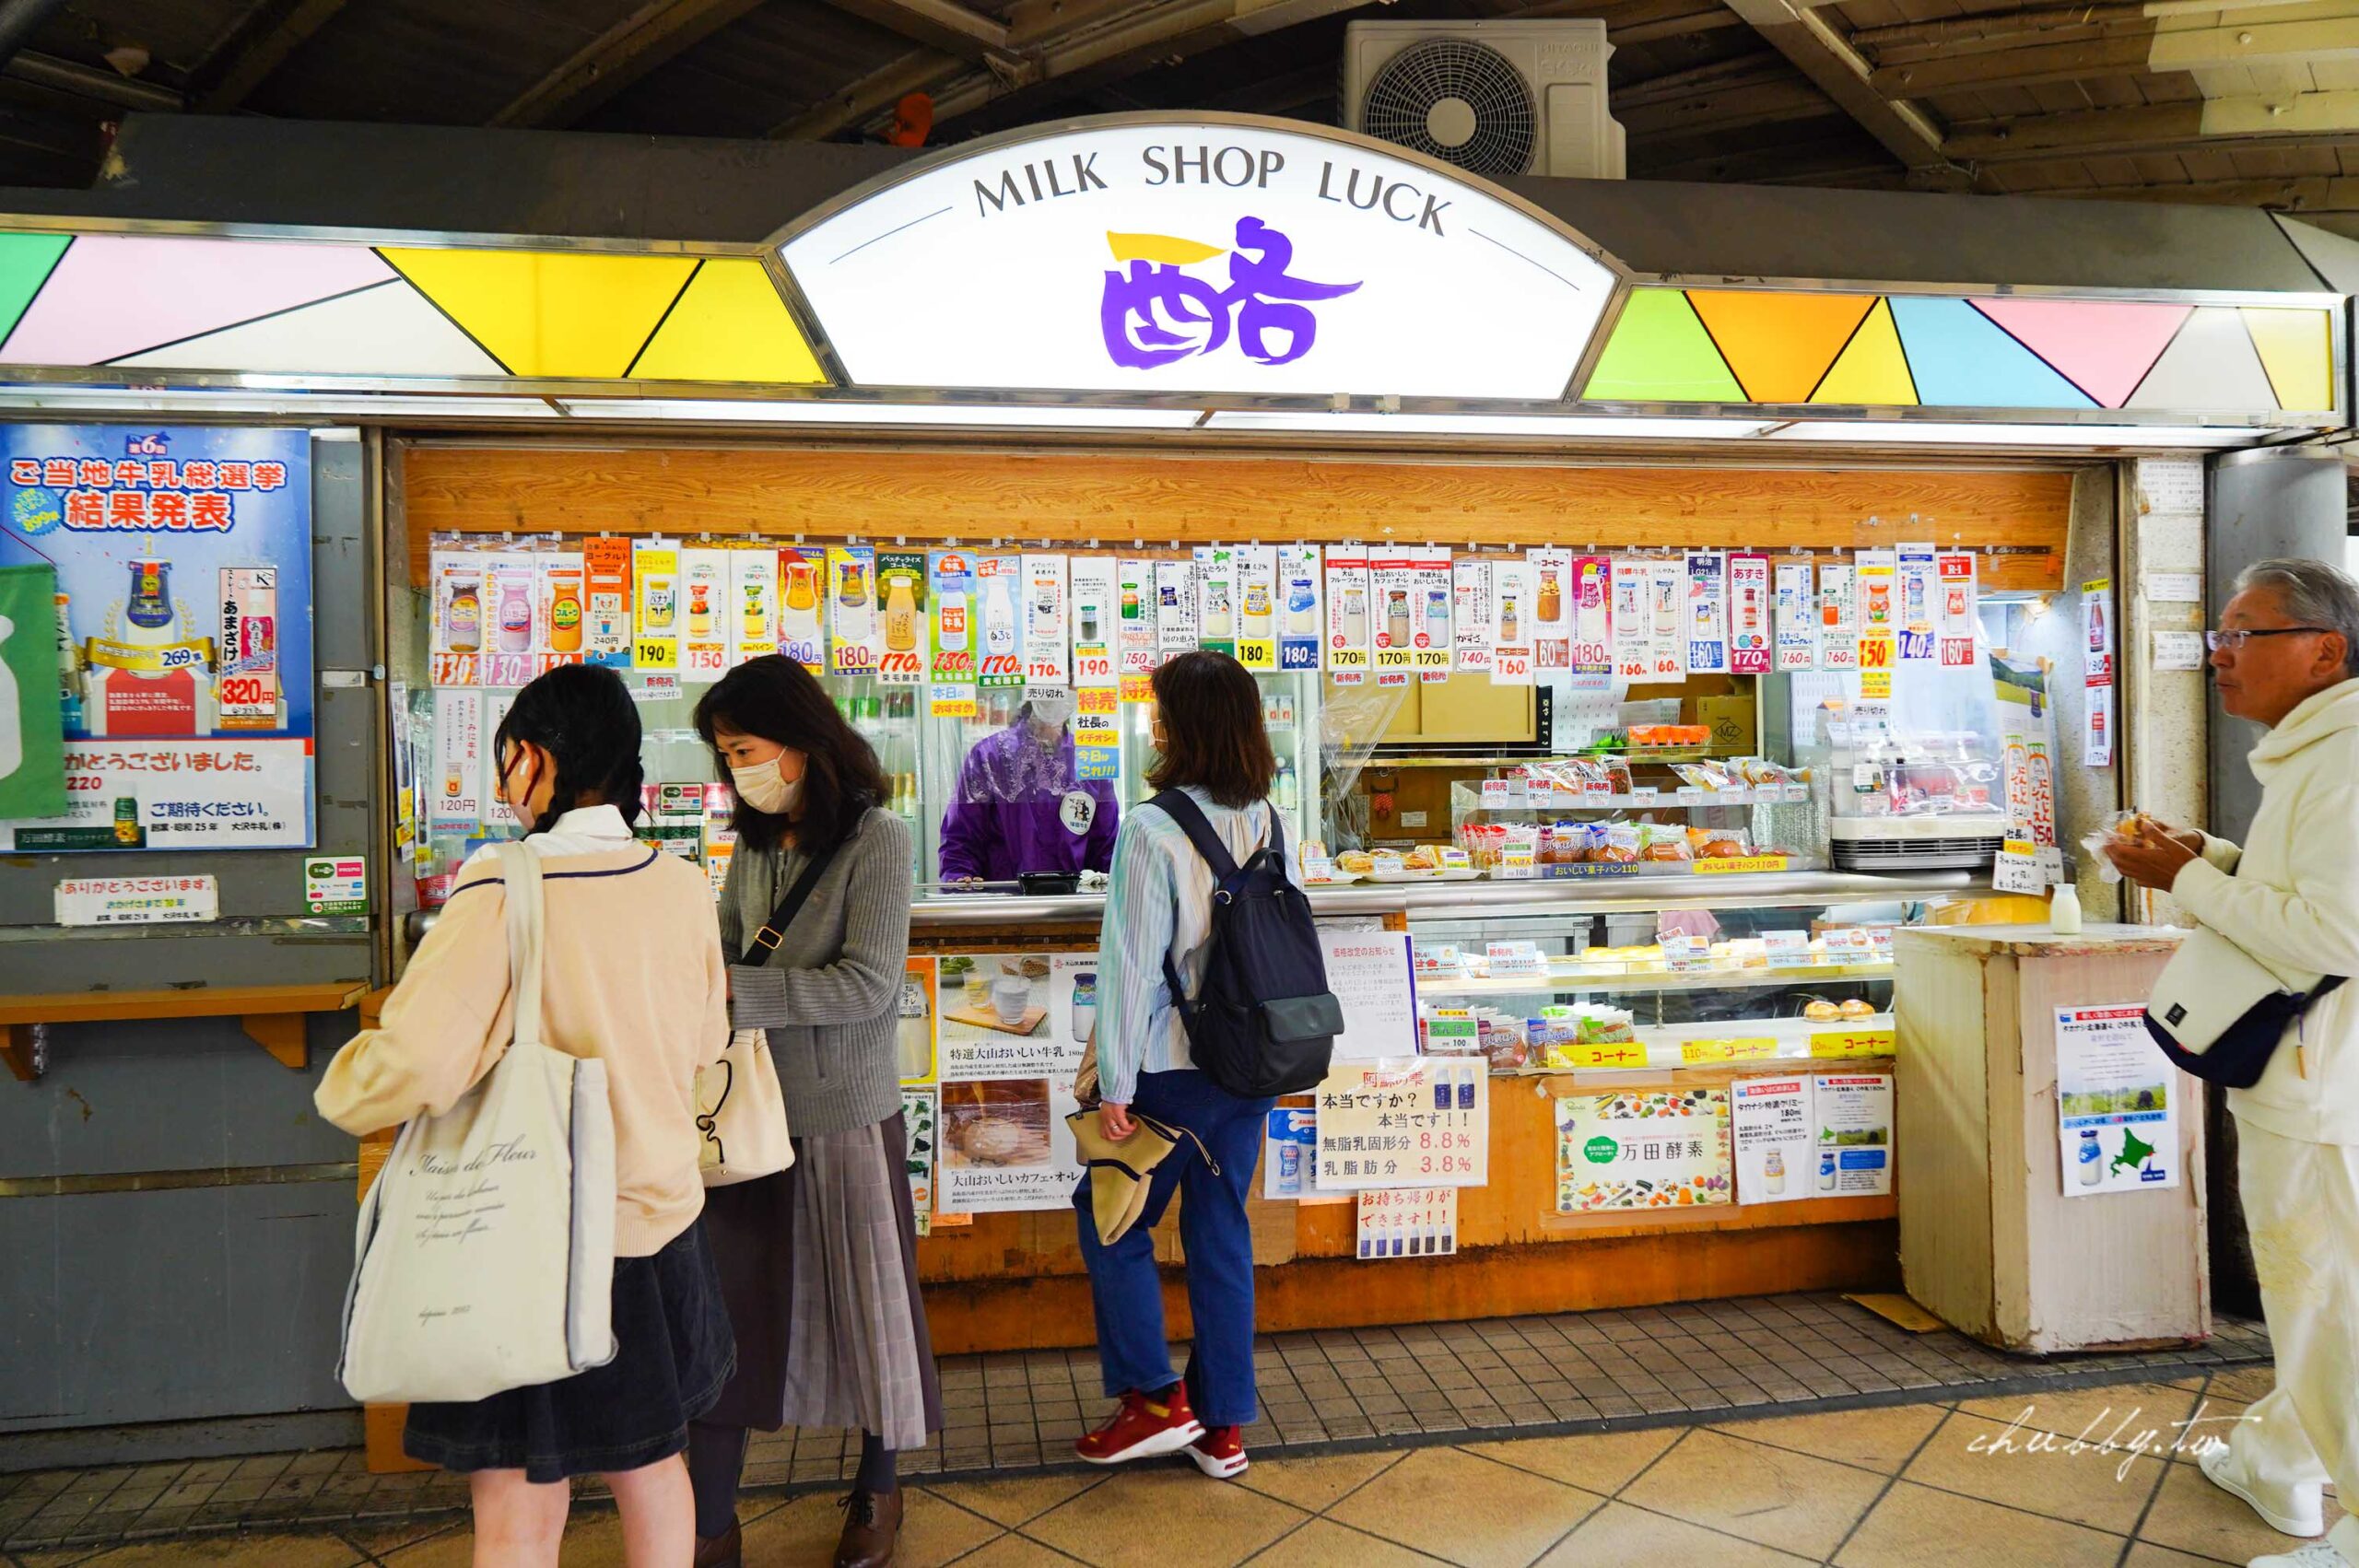 【東京美食】月台上的牛奶專賣店『酪MILK SHOP LUCK RAKU』 一次享用日本全國知名牛奶 @小胖盈的花椒人蔘